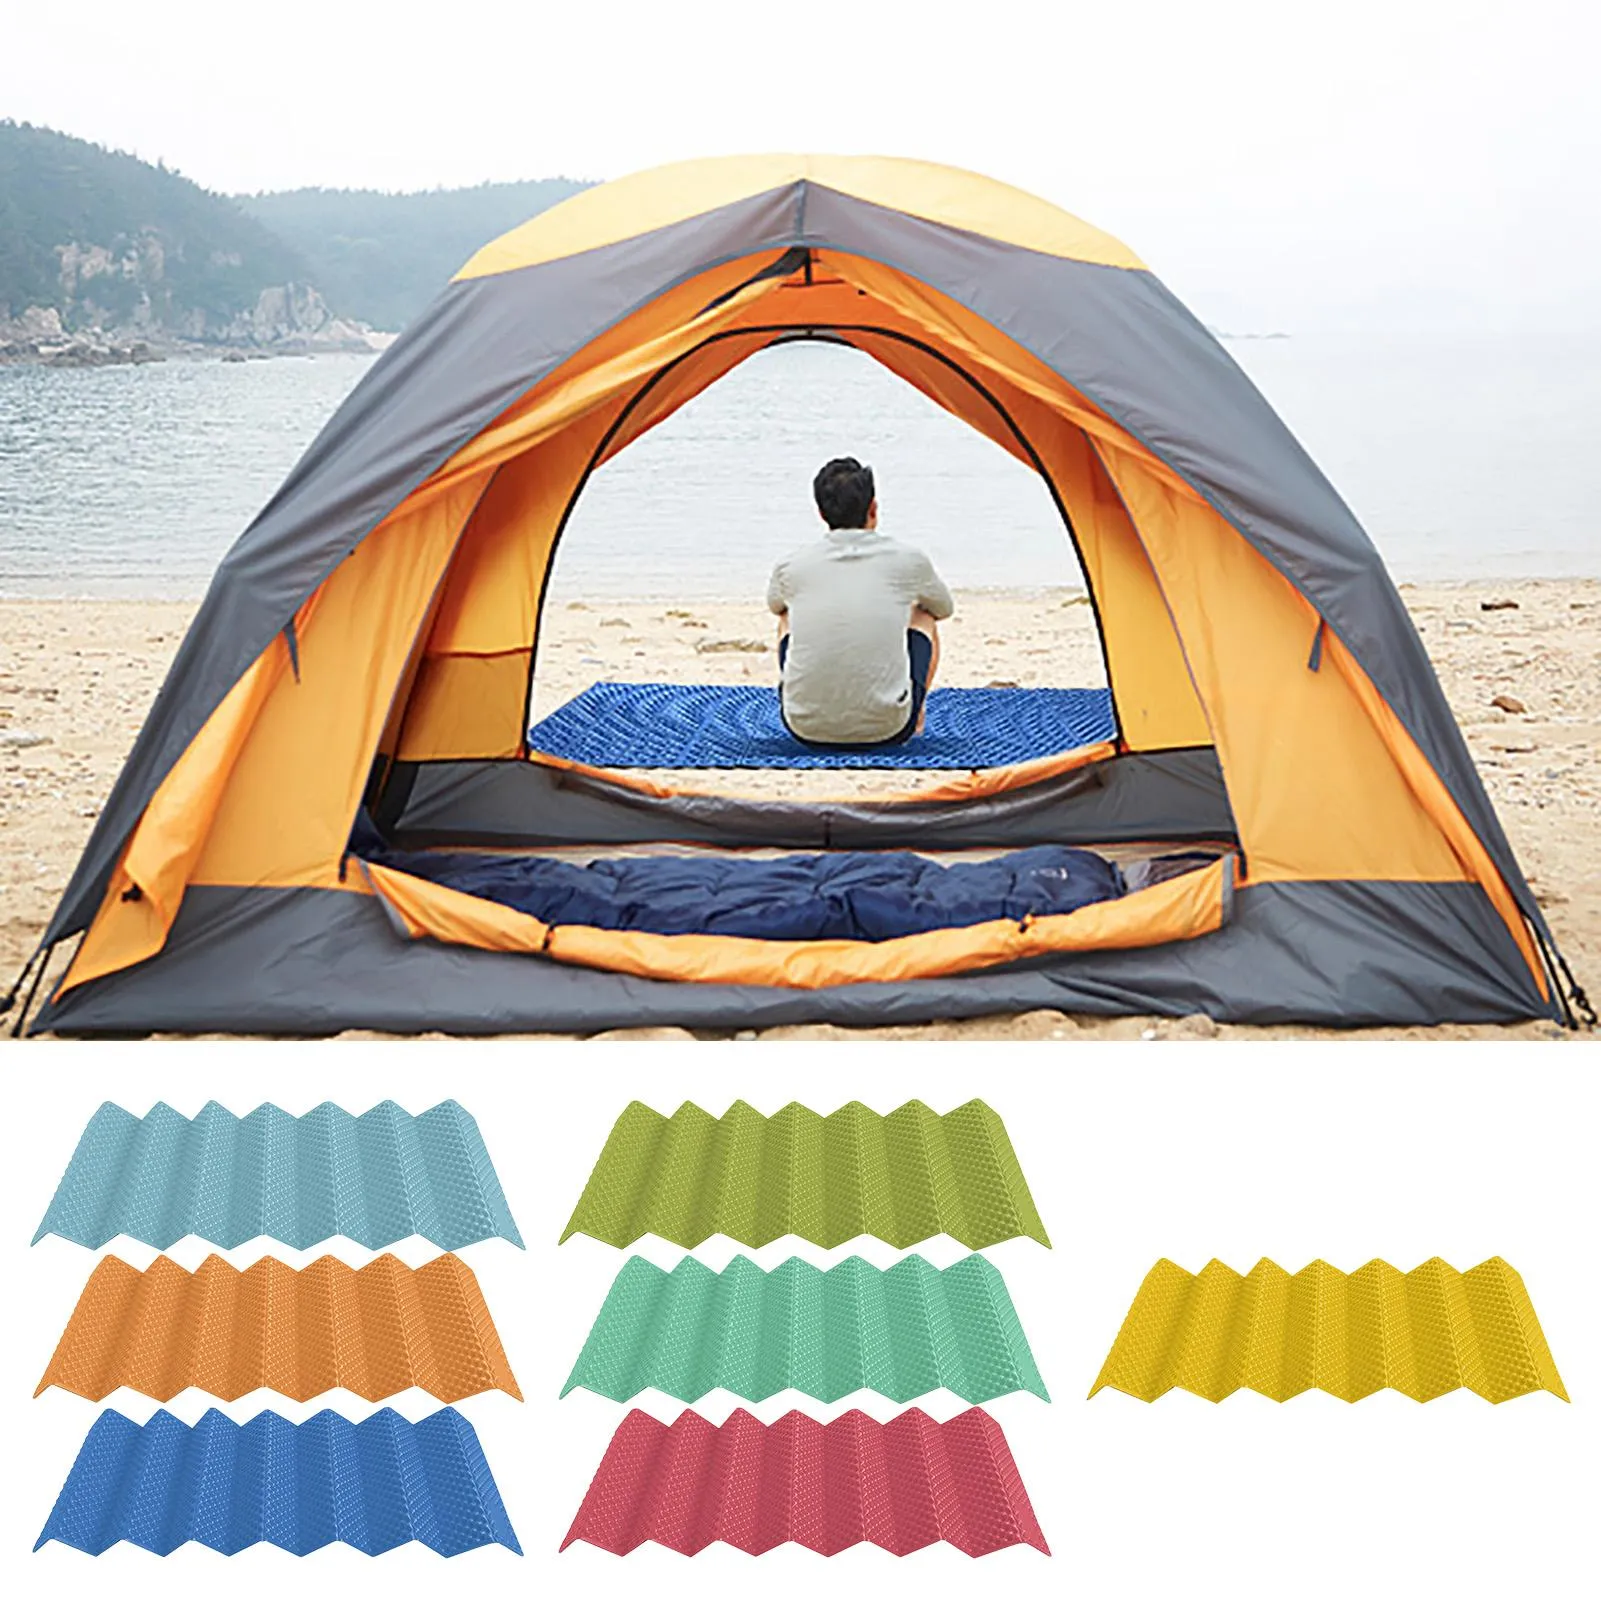 Mat 180x60cm Outdoor Camping Mat Ultralight Foam Camping Mat Folding Beach Tent Picnic Mat Sleeping Pad Waterproof Camping Mattress